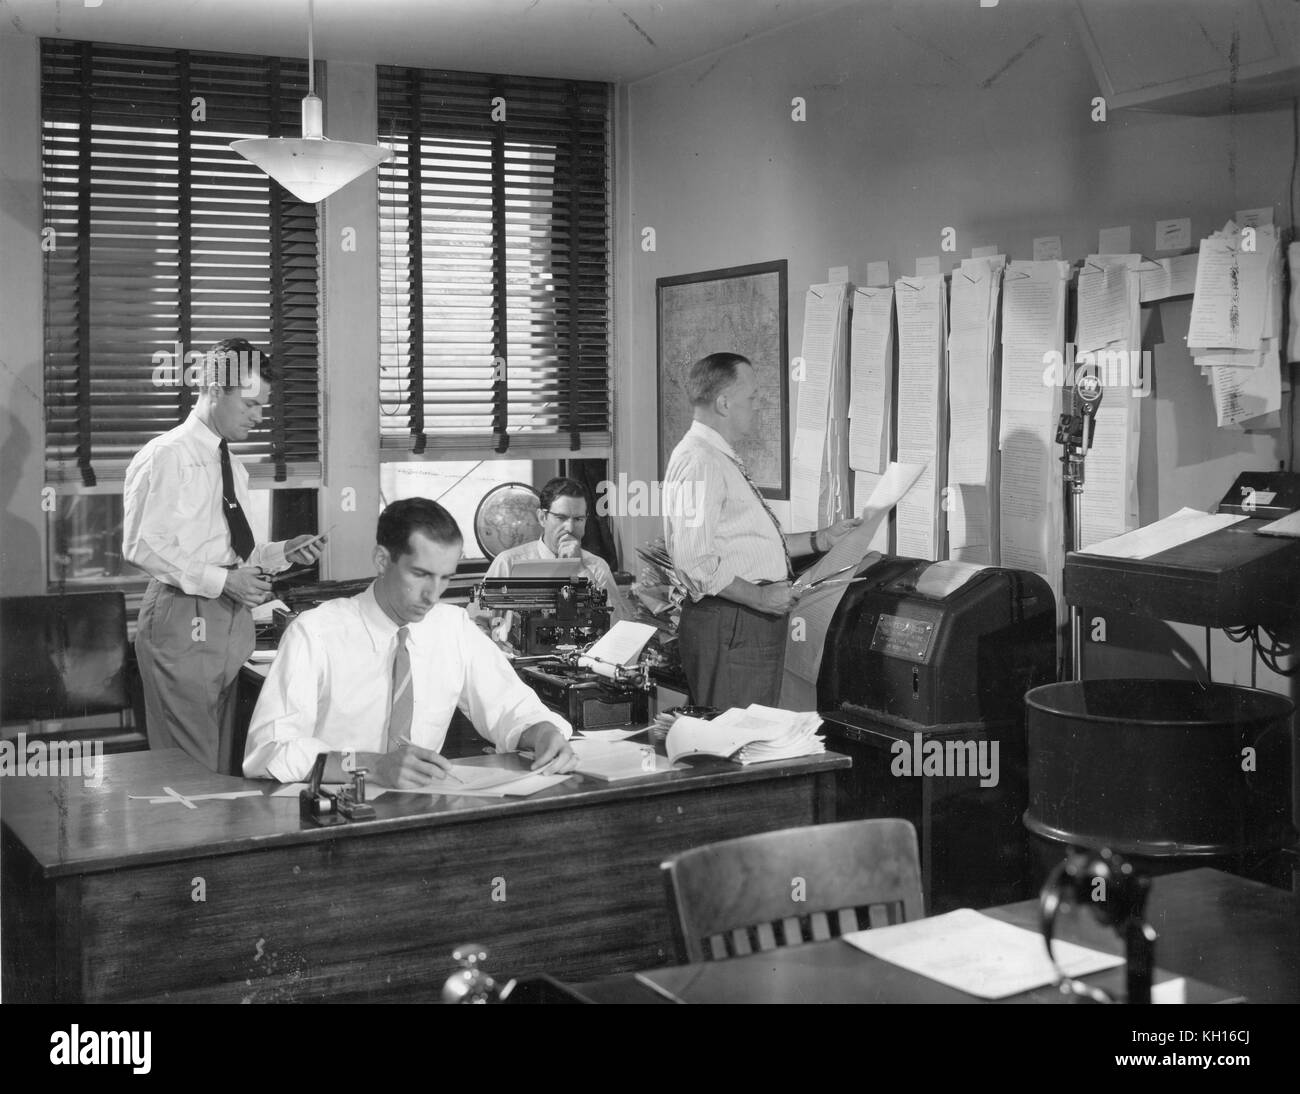 La salle de presse dans une grande station de radio américain recueille des informations par téléimprimeur de toutes les parties du monde d'être triés, édité et diffusé aux auditeurs, New York, NY, 1949. Banque D'Images